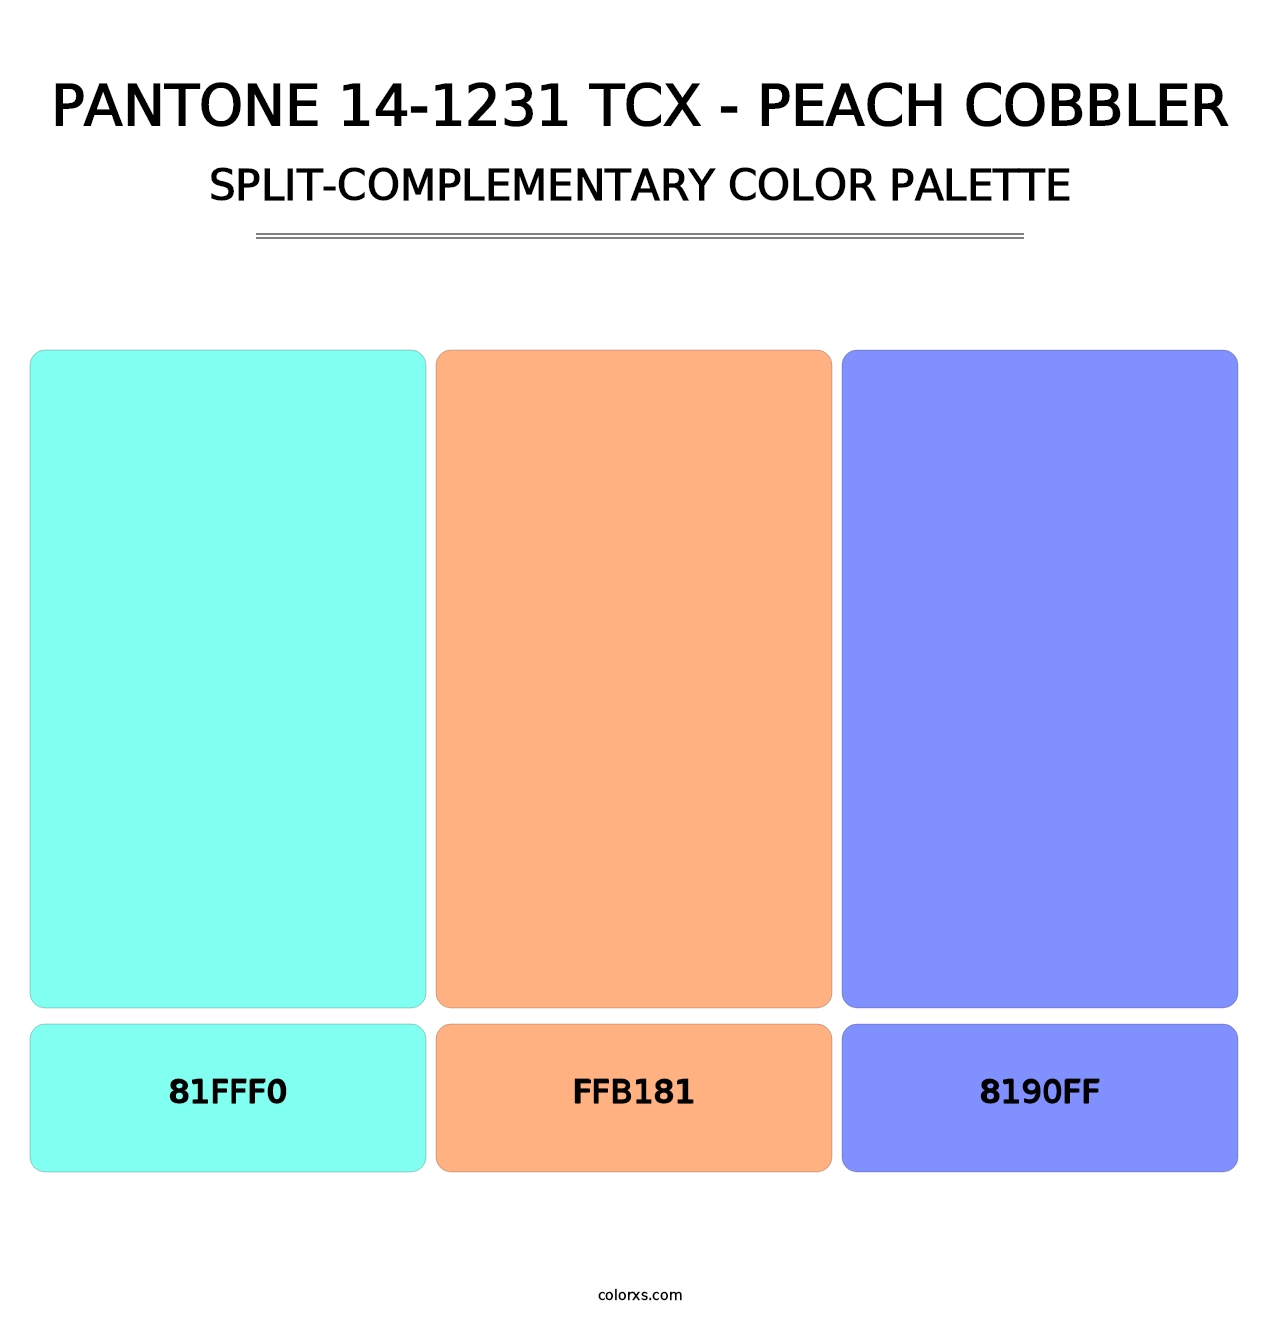 PANTONE 14-1231 TCX - Peach Cobbler - Split-Complementary Color Palette